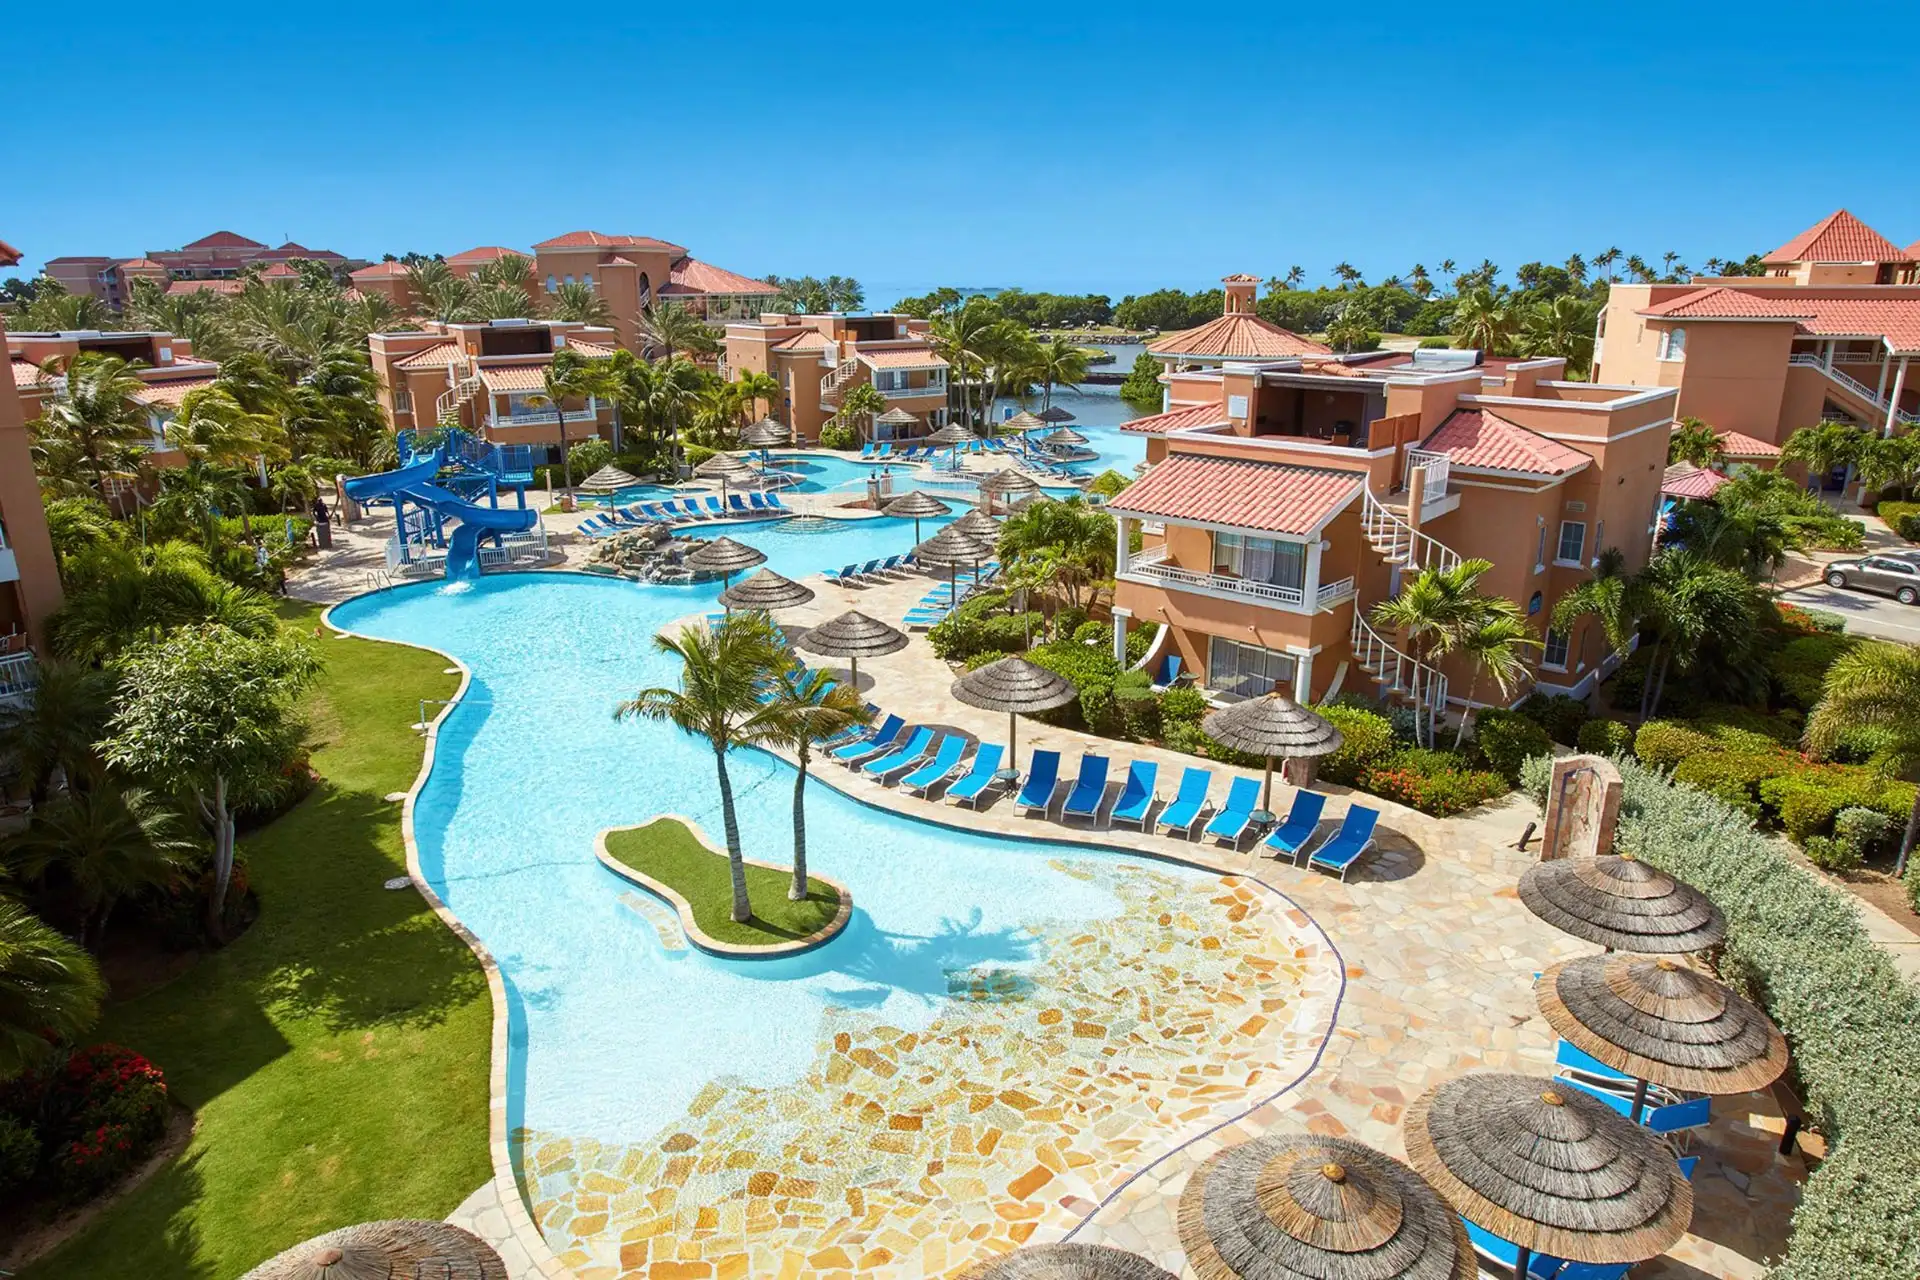 Divi Village Golf and Beach Resort in Aruba